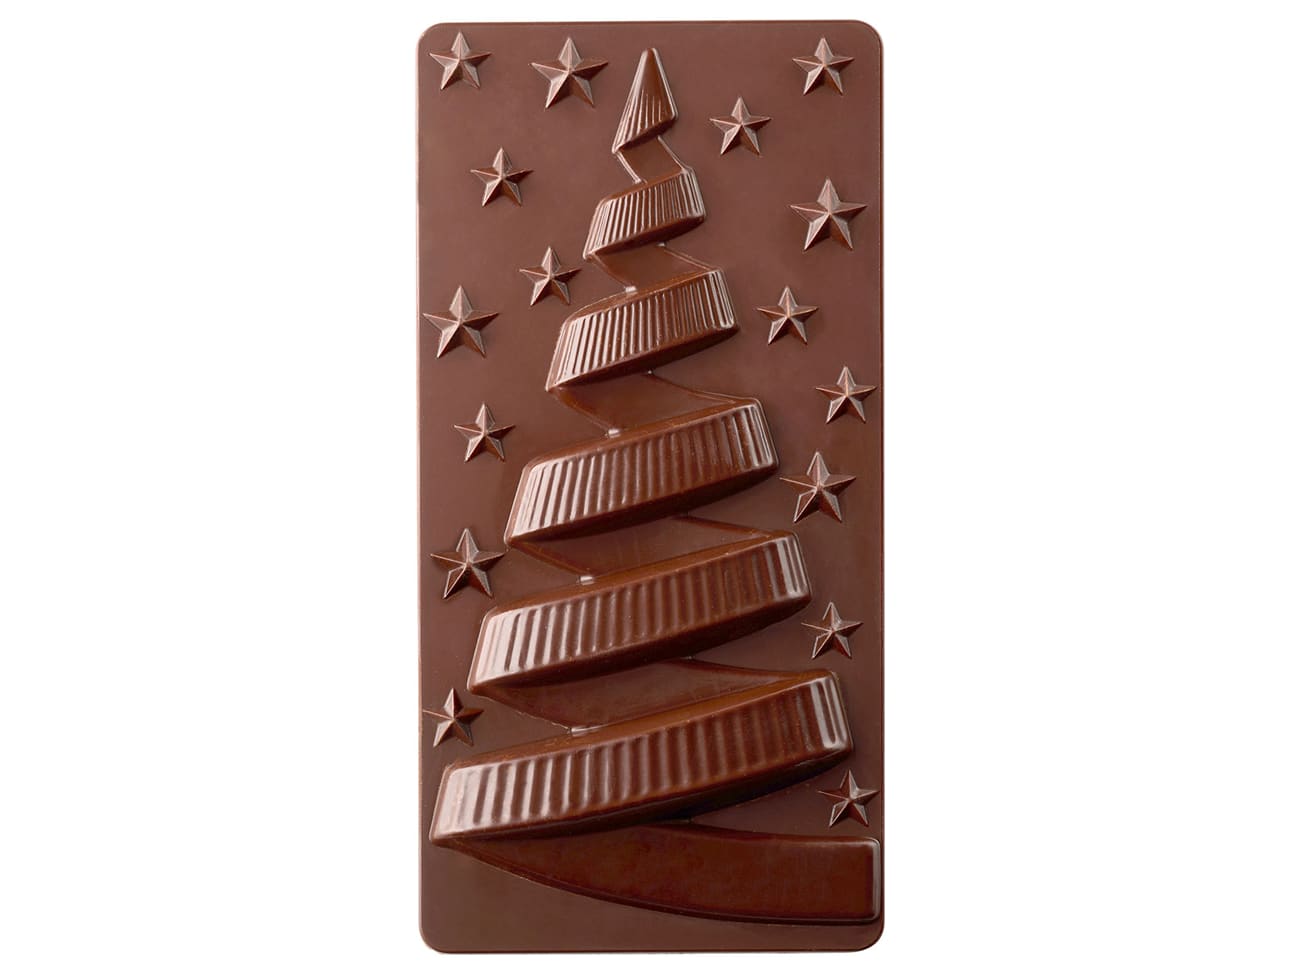 Pavoni Polycarbonate Christmas Xmas Night Chocolate Bar Mold by Fabrizio  Fiorani - 154 x 77 x h 15mm - 3 cavity - 100gr